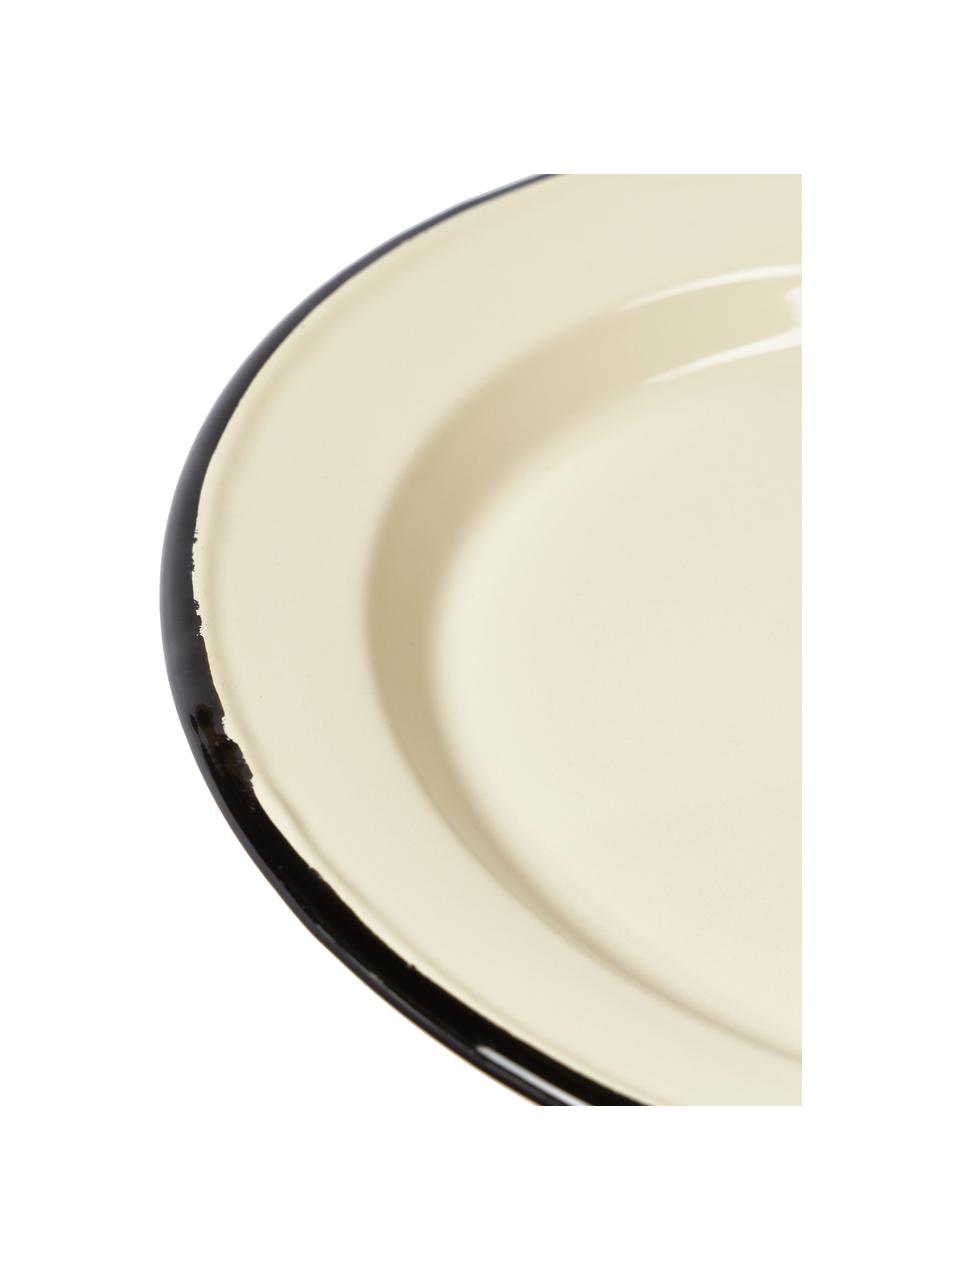 Assiettes plates émaillées avec bord peint main Ginger, 2 élém., Métal avec revêtement en émail, Couleur crème, noir, Ø 26 x haut. 2 cm